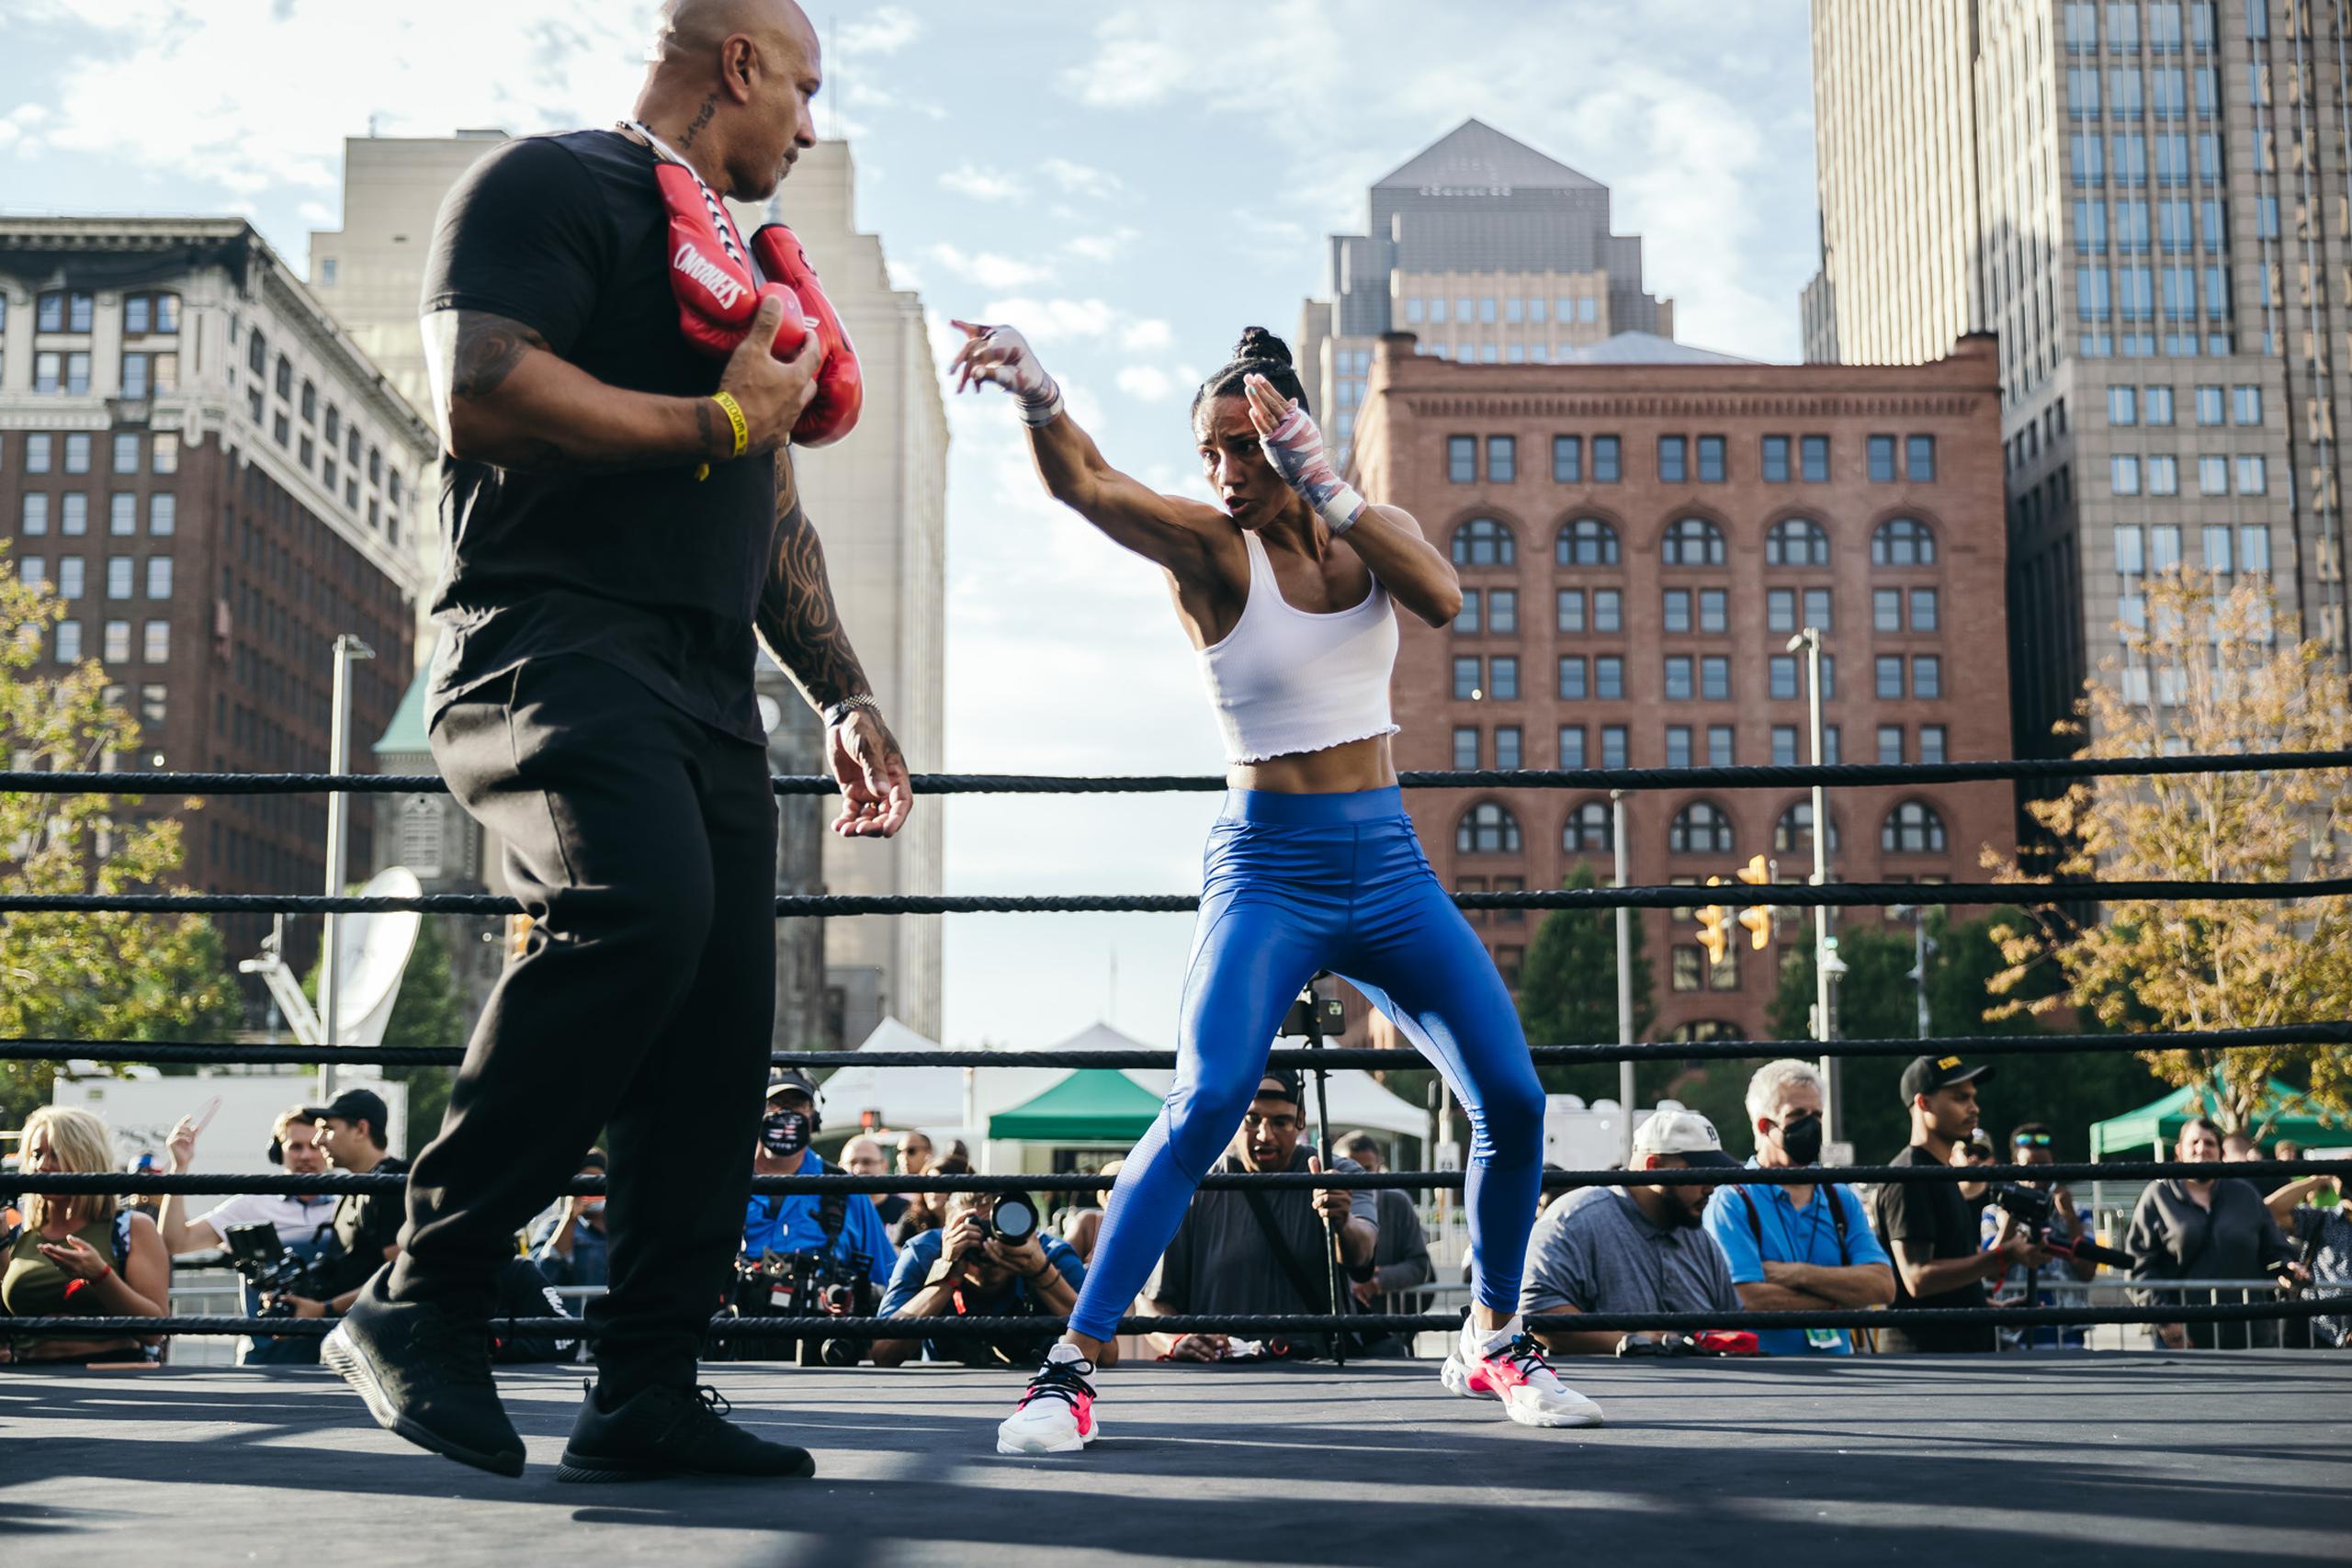 La boxeadora puertorriqueña participó de un entrenamiento abierto al público en Cleveland, Ohio.